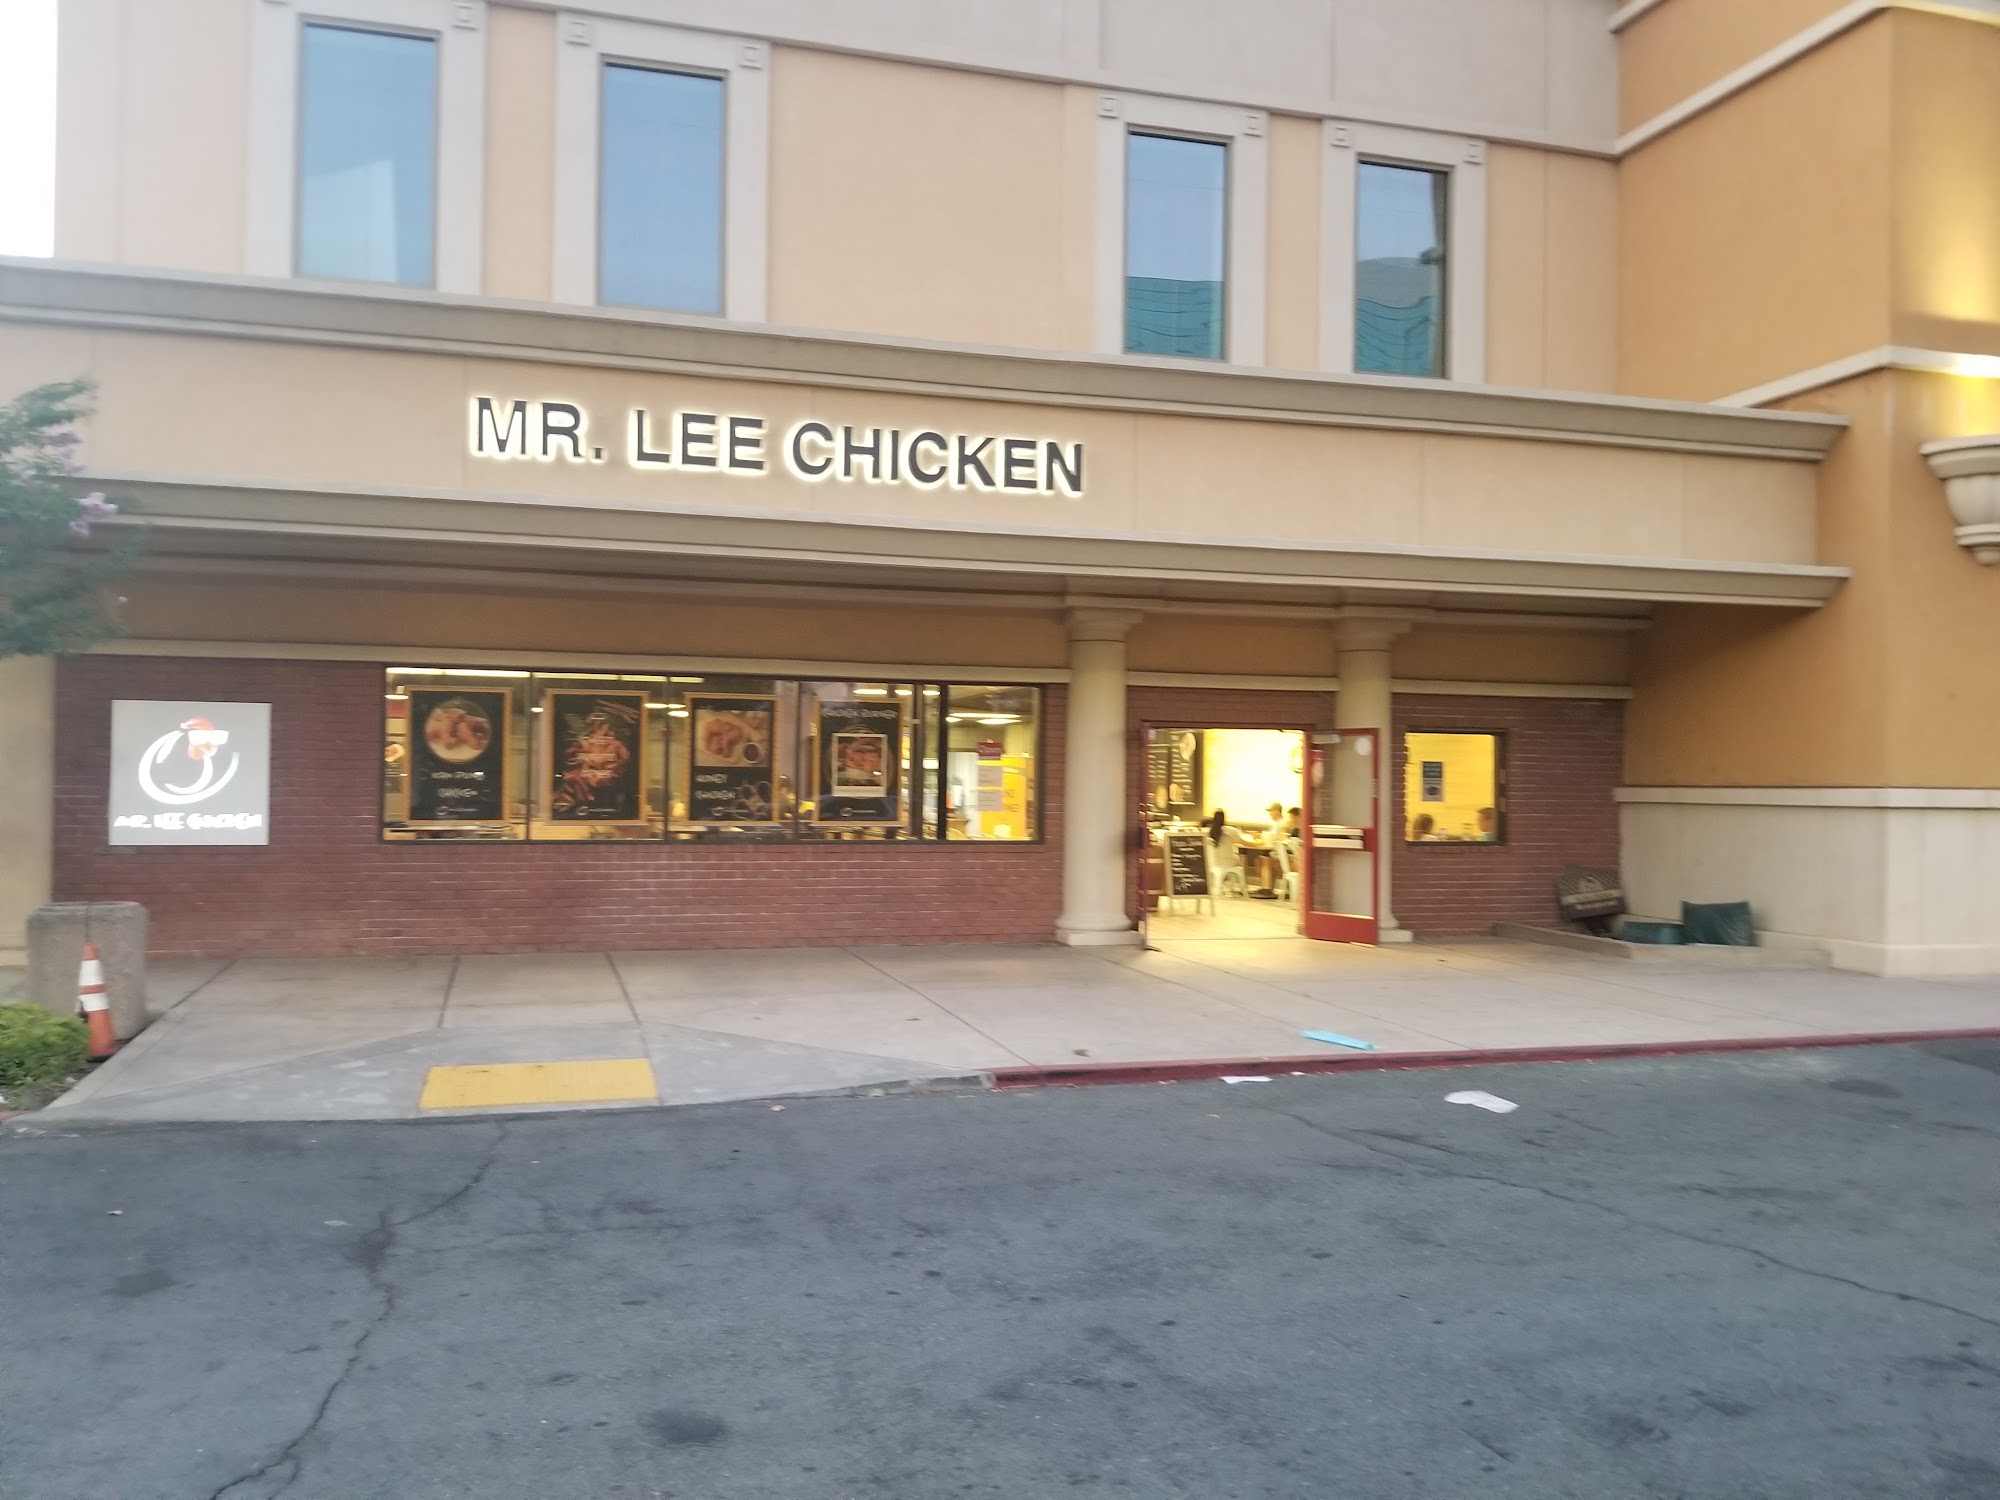 Mr. Lee Chicken